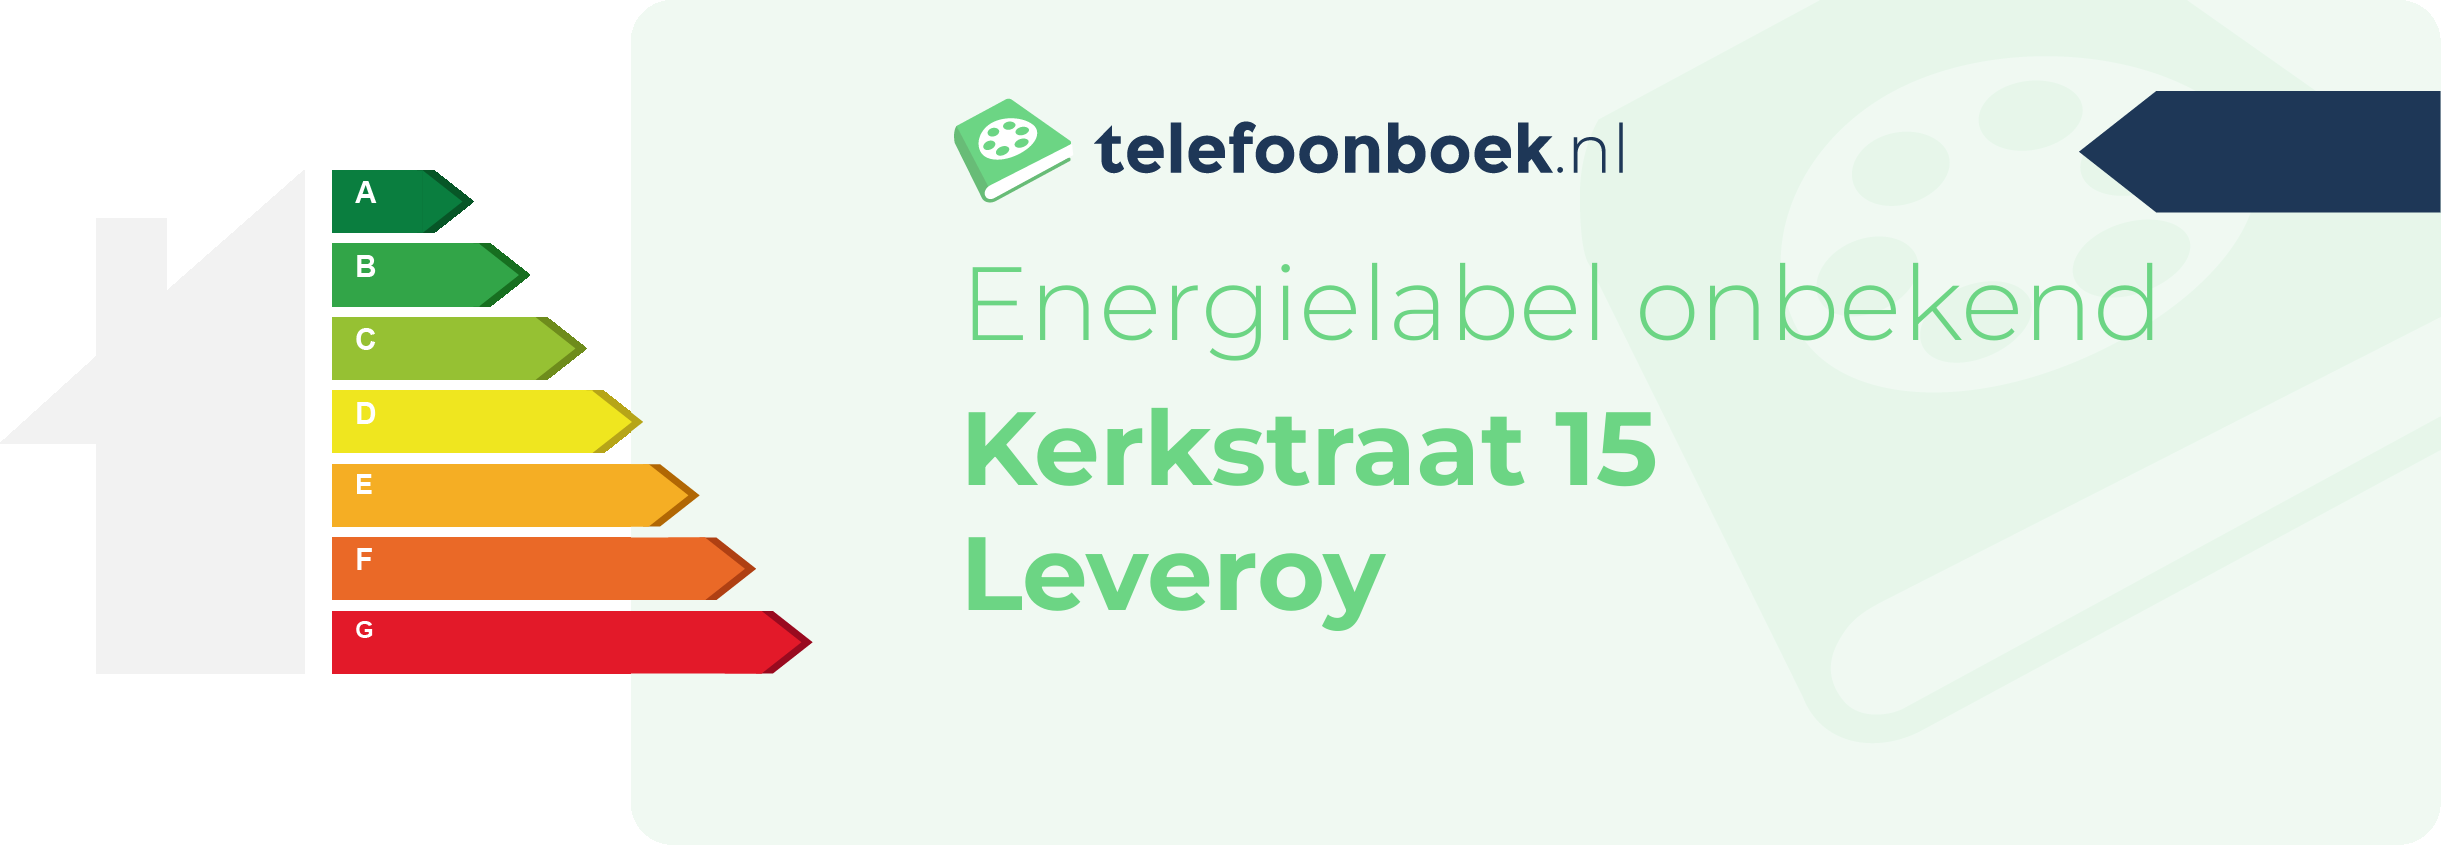 Energielabel Kerkstraat 15 Leveroy